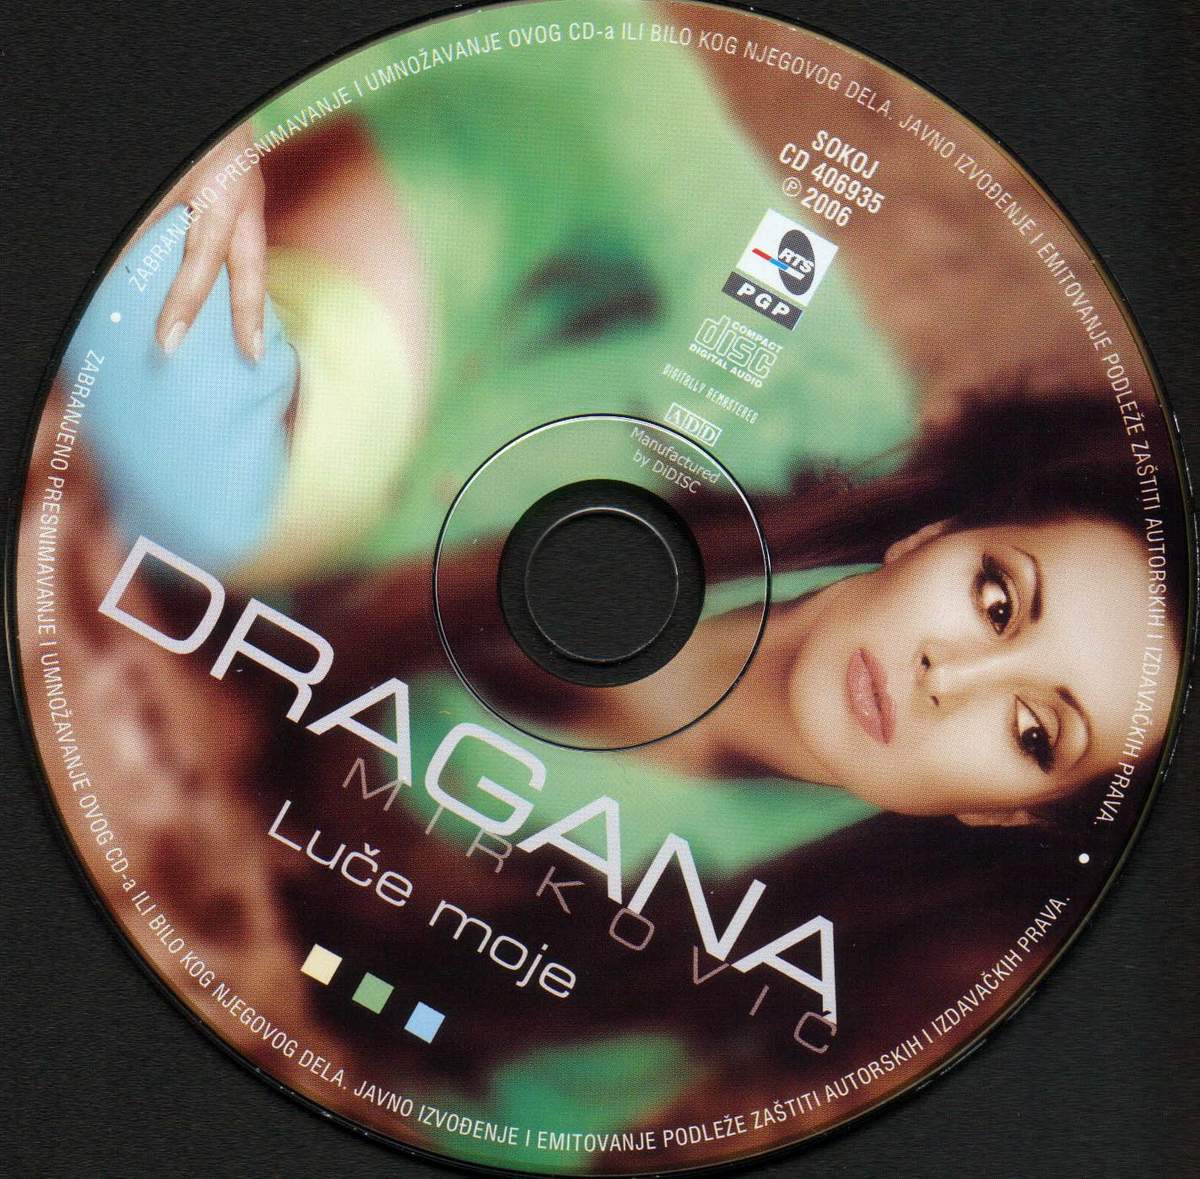 Dragana Mirkovi 2006 Lue moje 1 cd